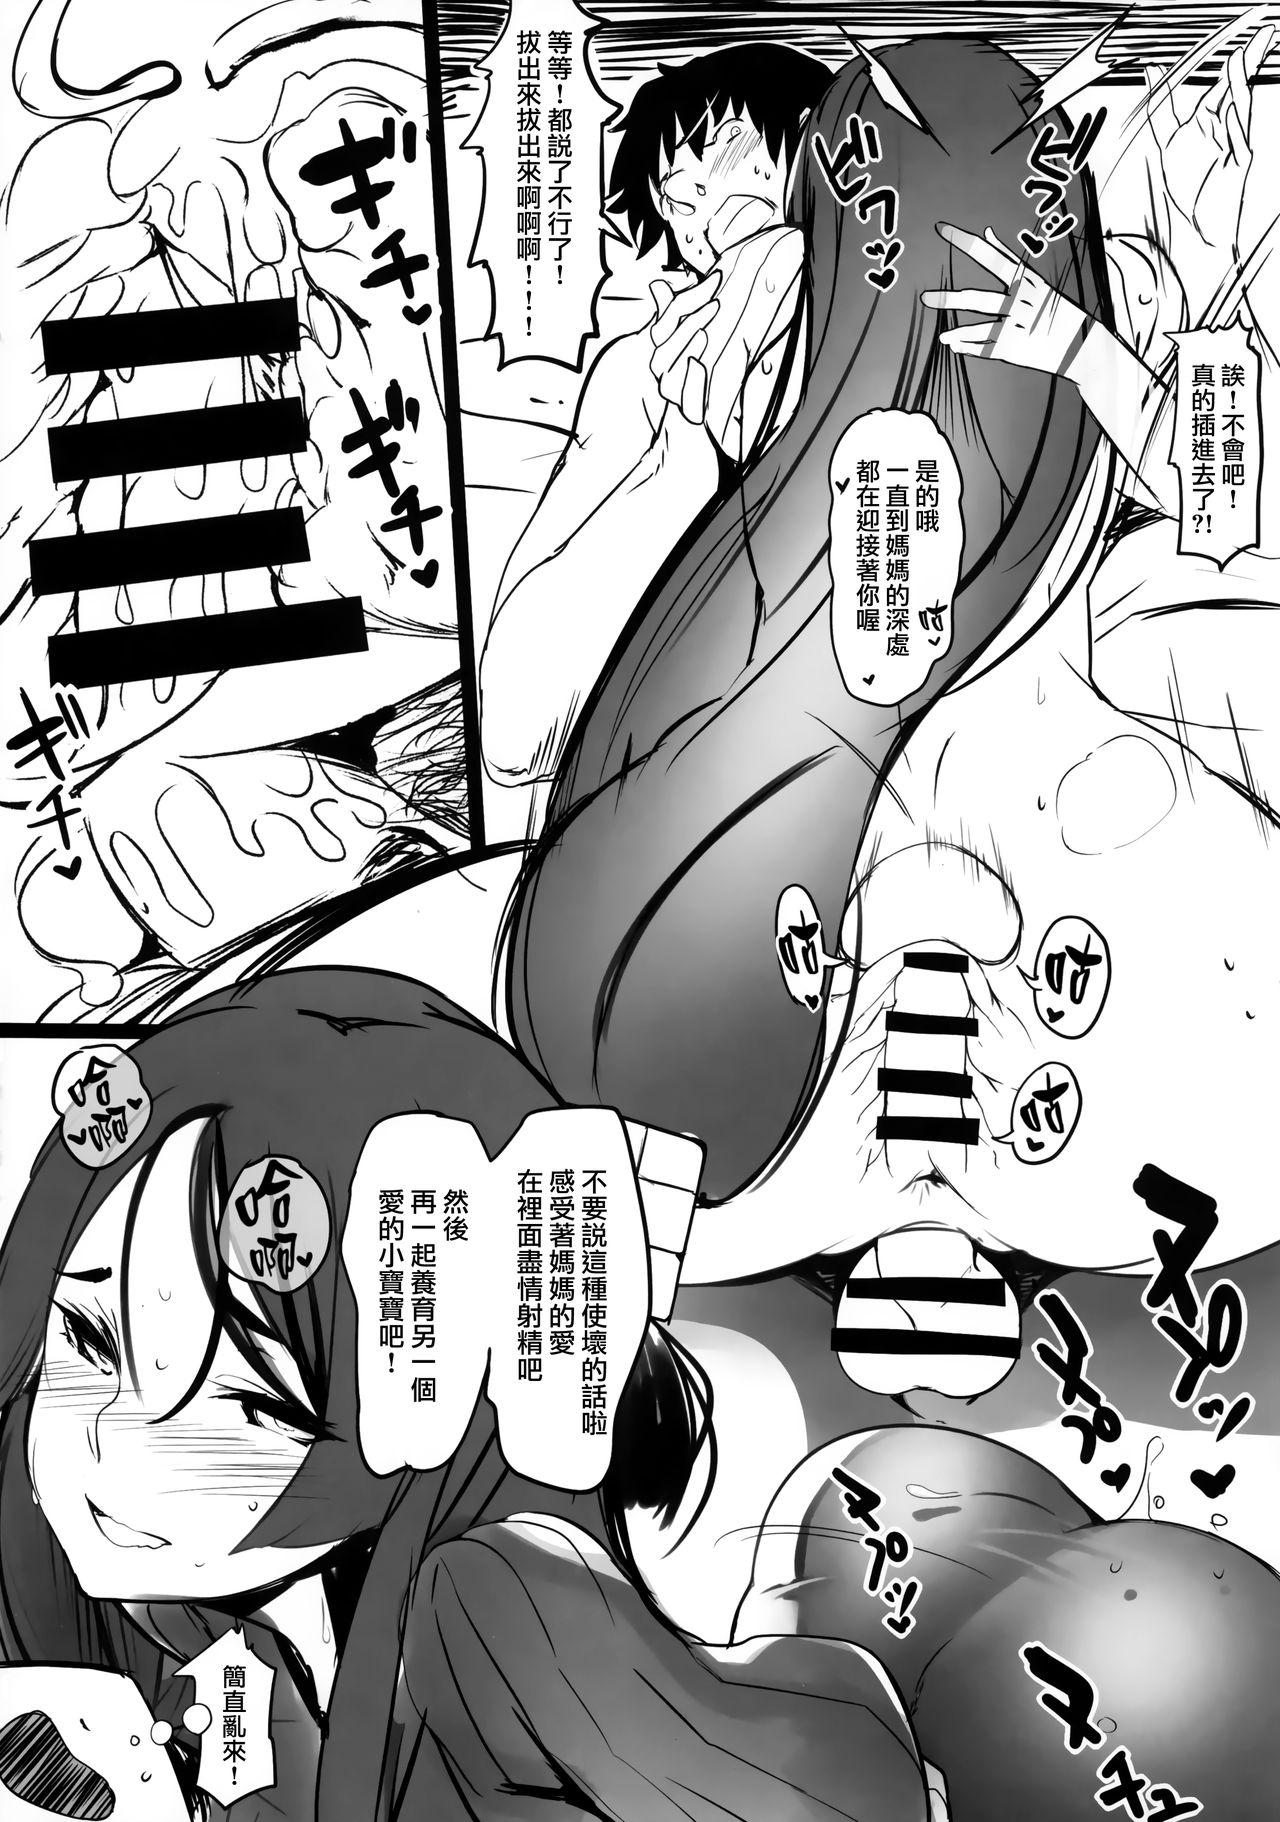 British Oya no Kokoro Ko Shirazu - Fate grand order Flash - Page 6